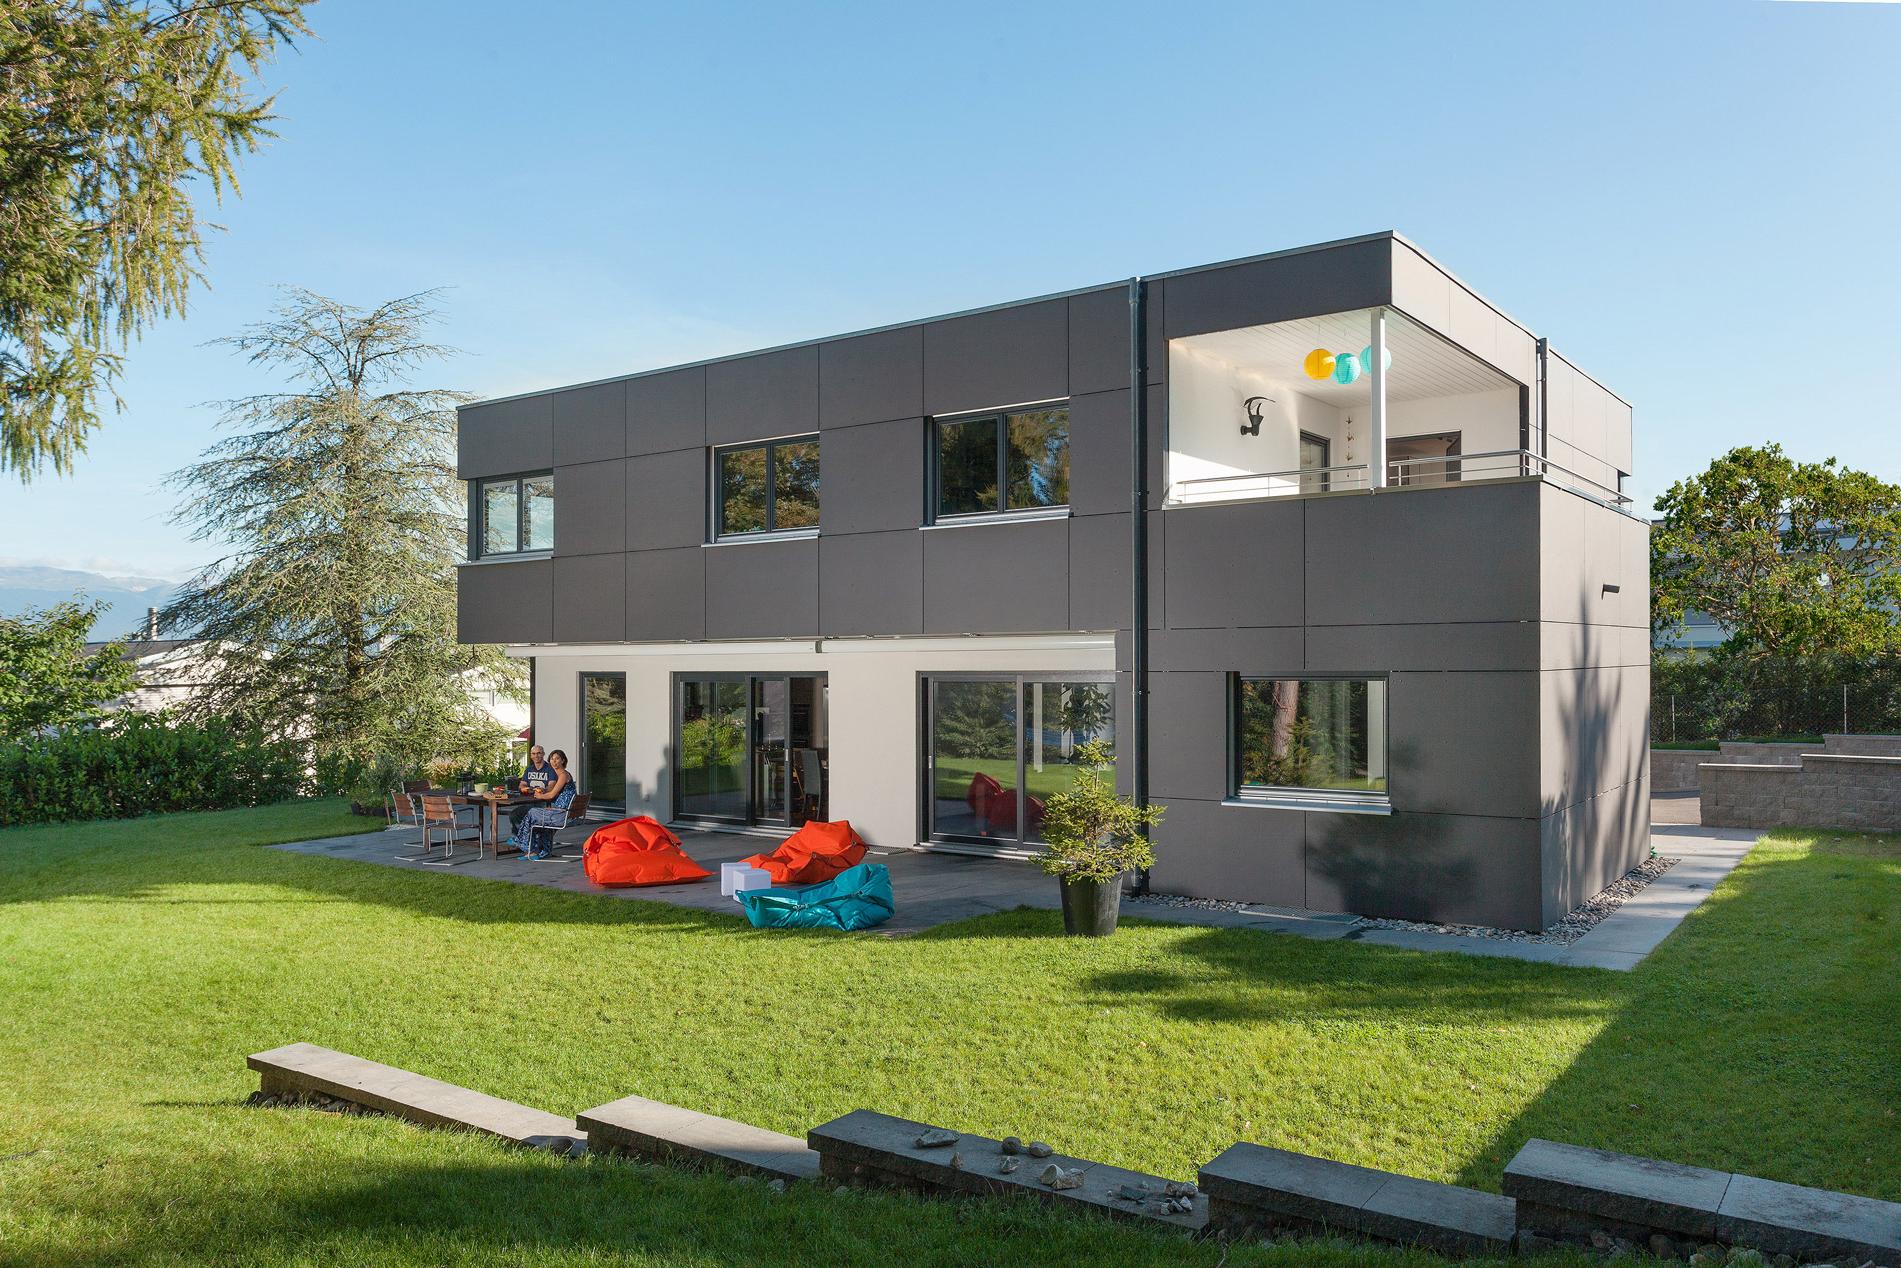 Casa unifamiliar en estilo Bauhaus con techo plano